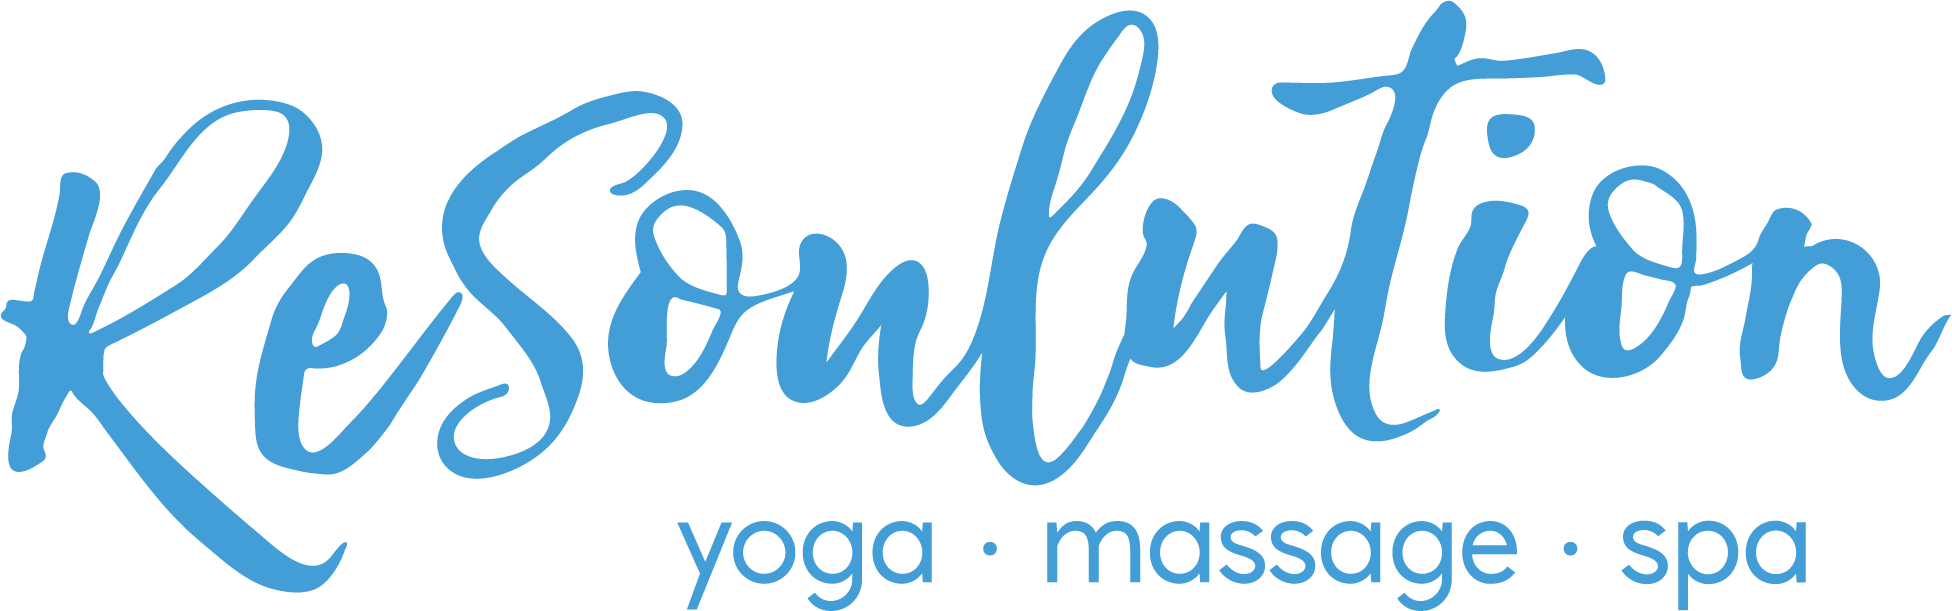 ReSoulution Yoga Massage Esthetics Bowmanville